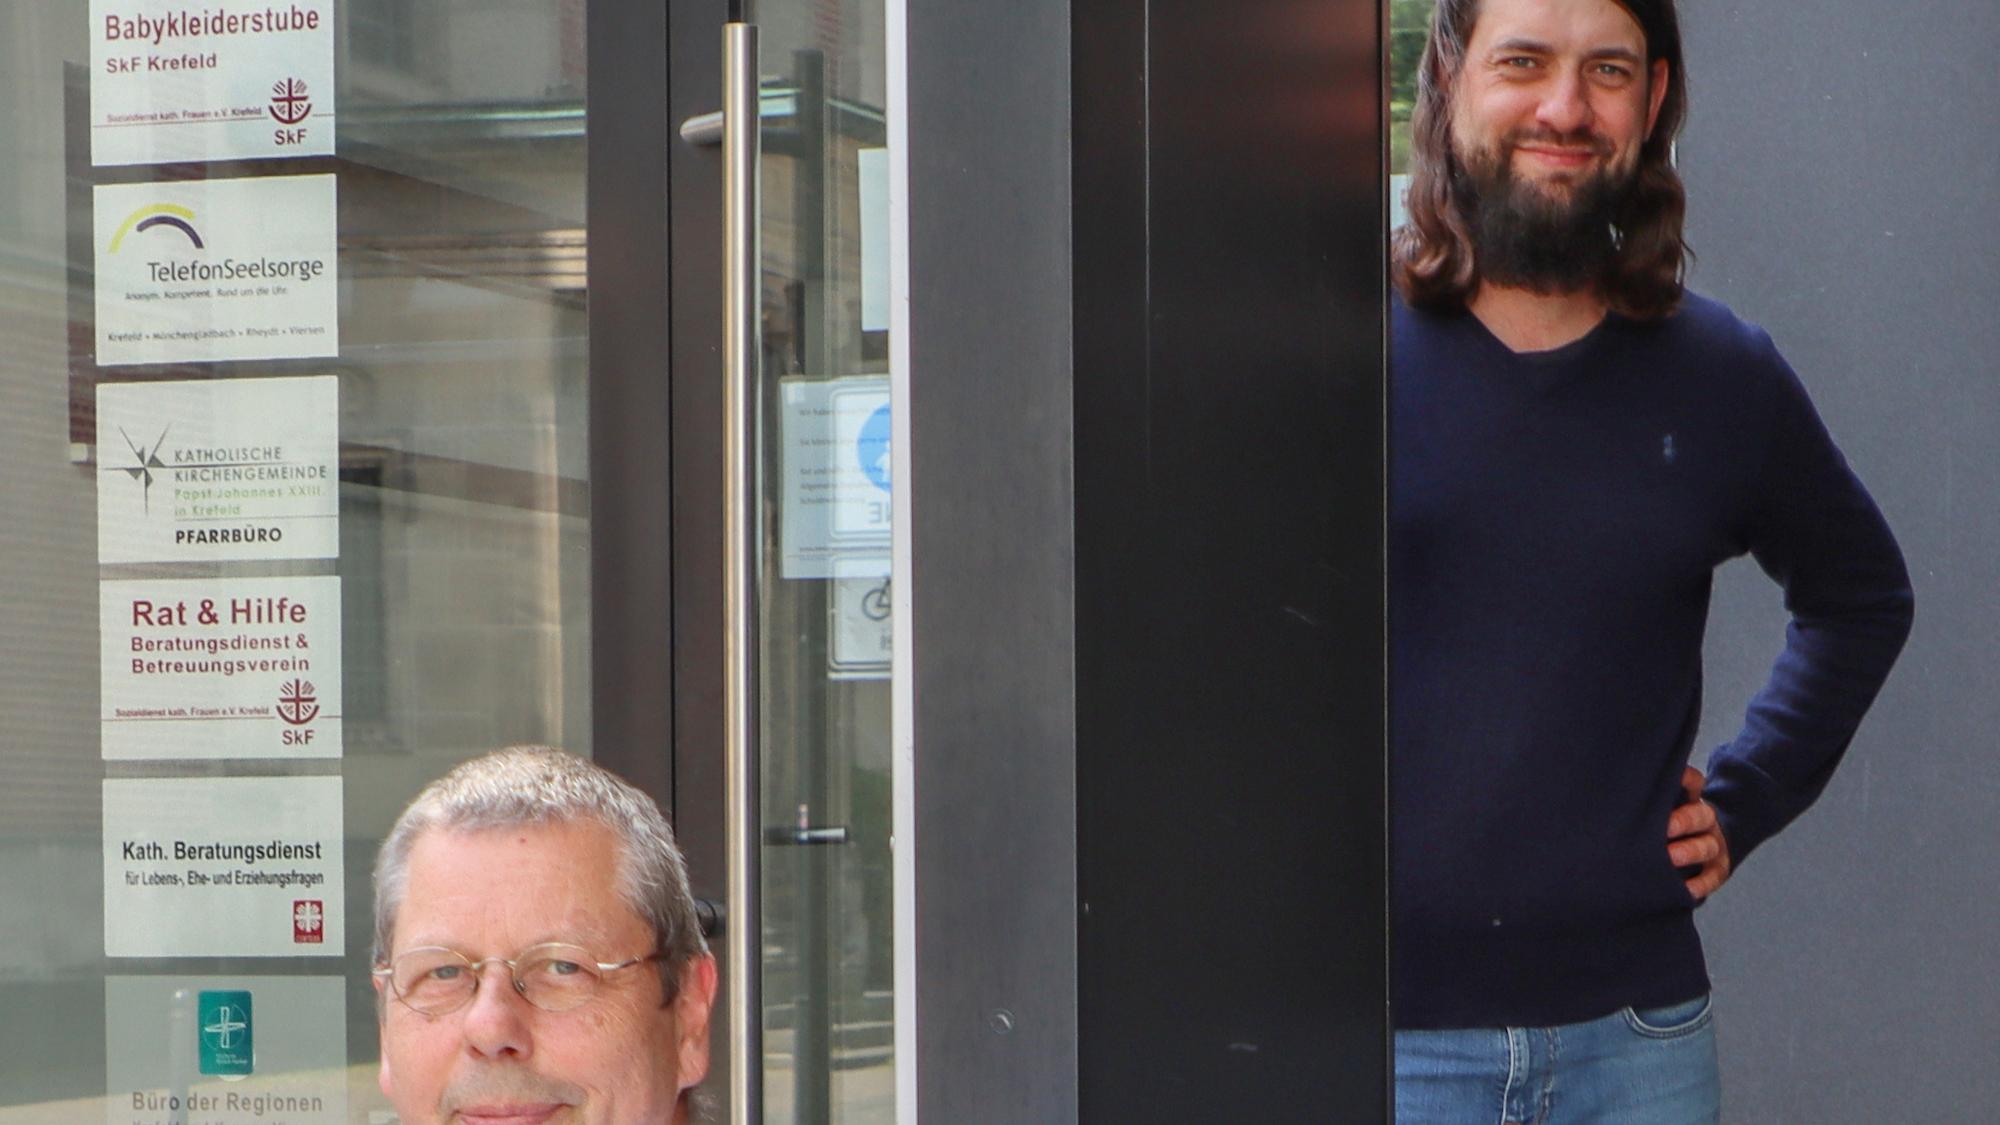 Stabübergabe: Klaus von der Heiden (l.) und Patrick Diekneite vor dem Büro der Regionen in Krefeld. (c) Arne Schenk